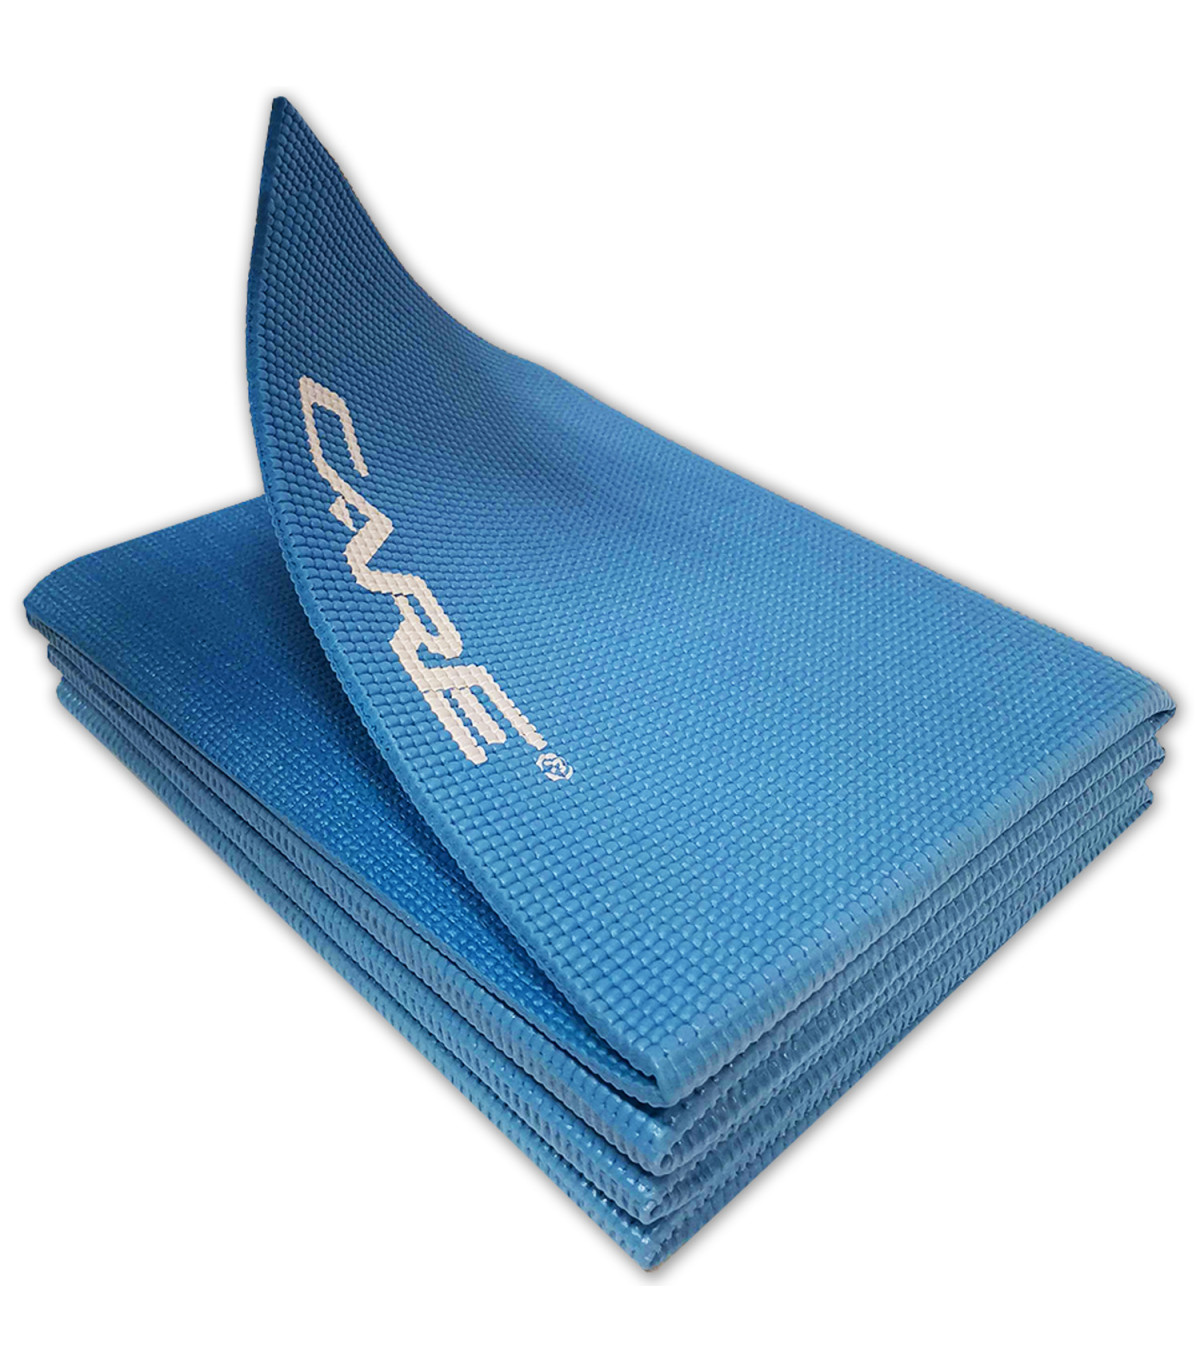 Barre de gymnastique pliable bleue + vidéos d'exercices - Barre compacte  idéale pour